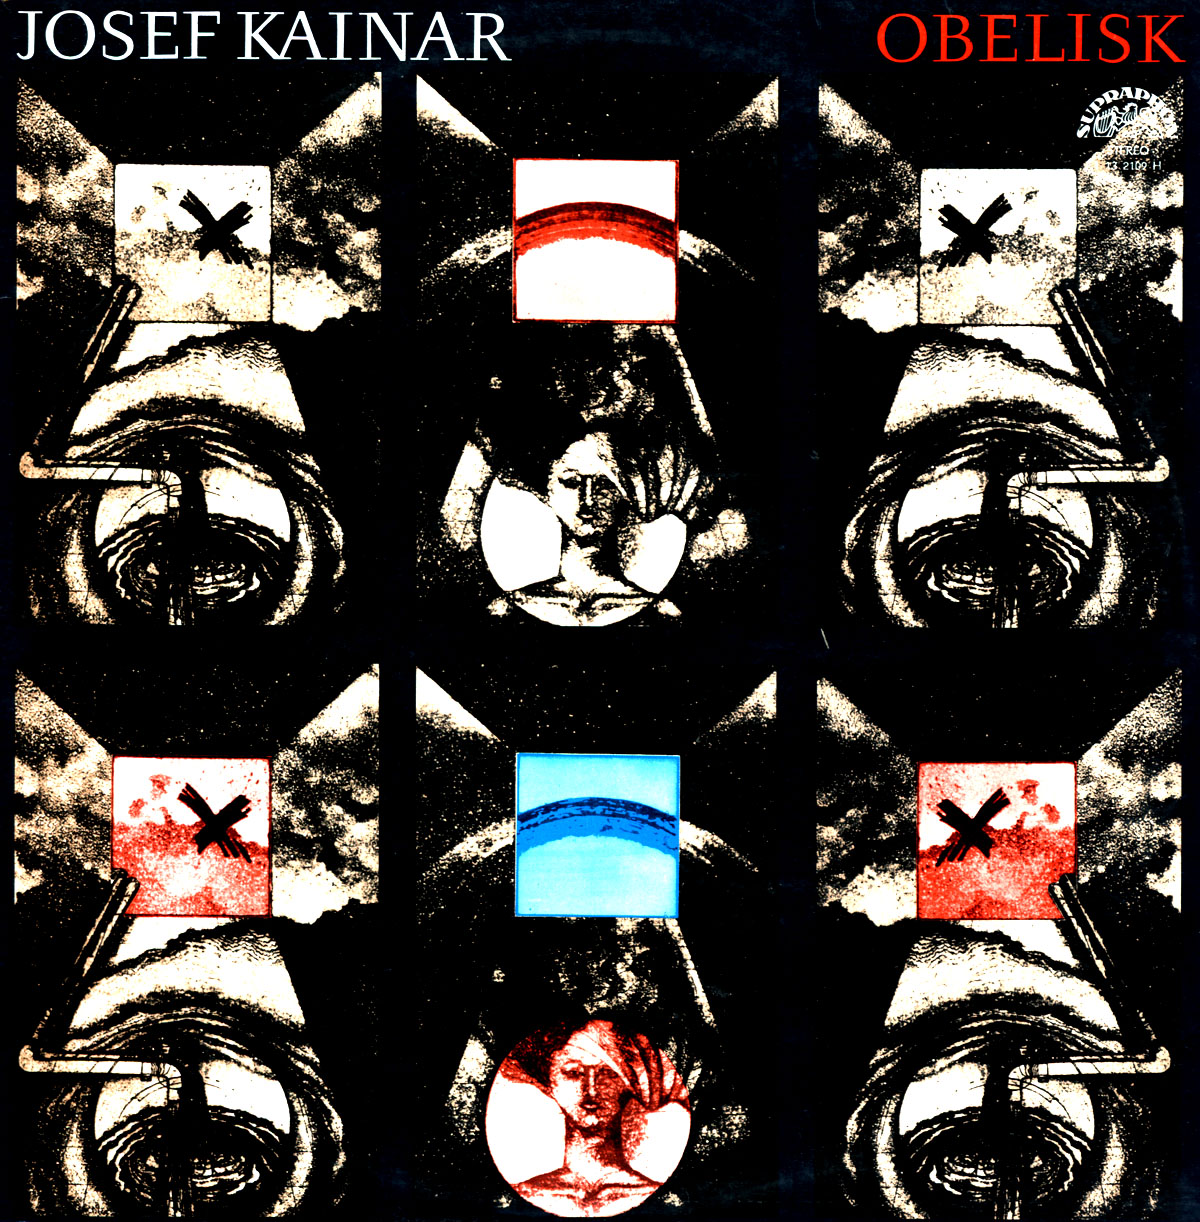 Josef Kainar ‎– Obelisk [по заказу чешской  фирмы SUPRAPHON, 1 13 2109]